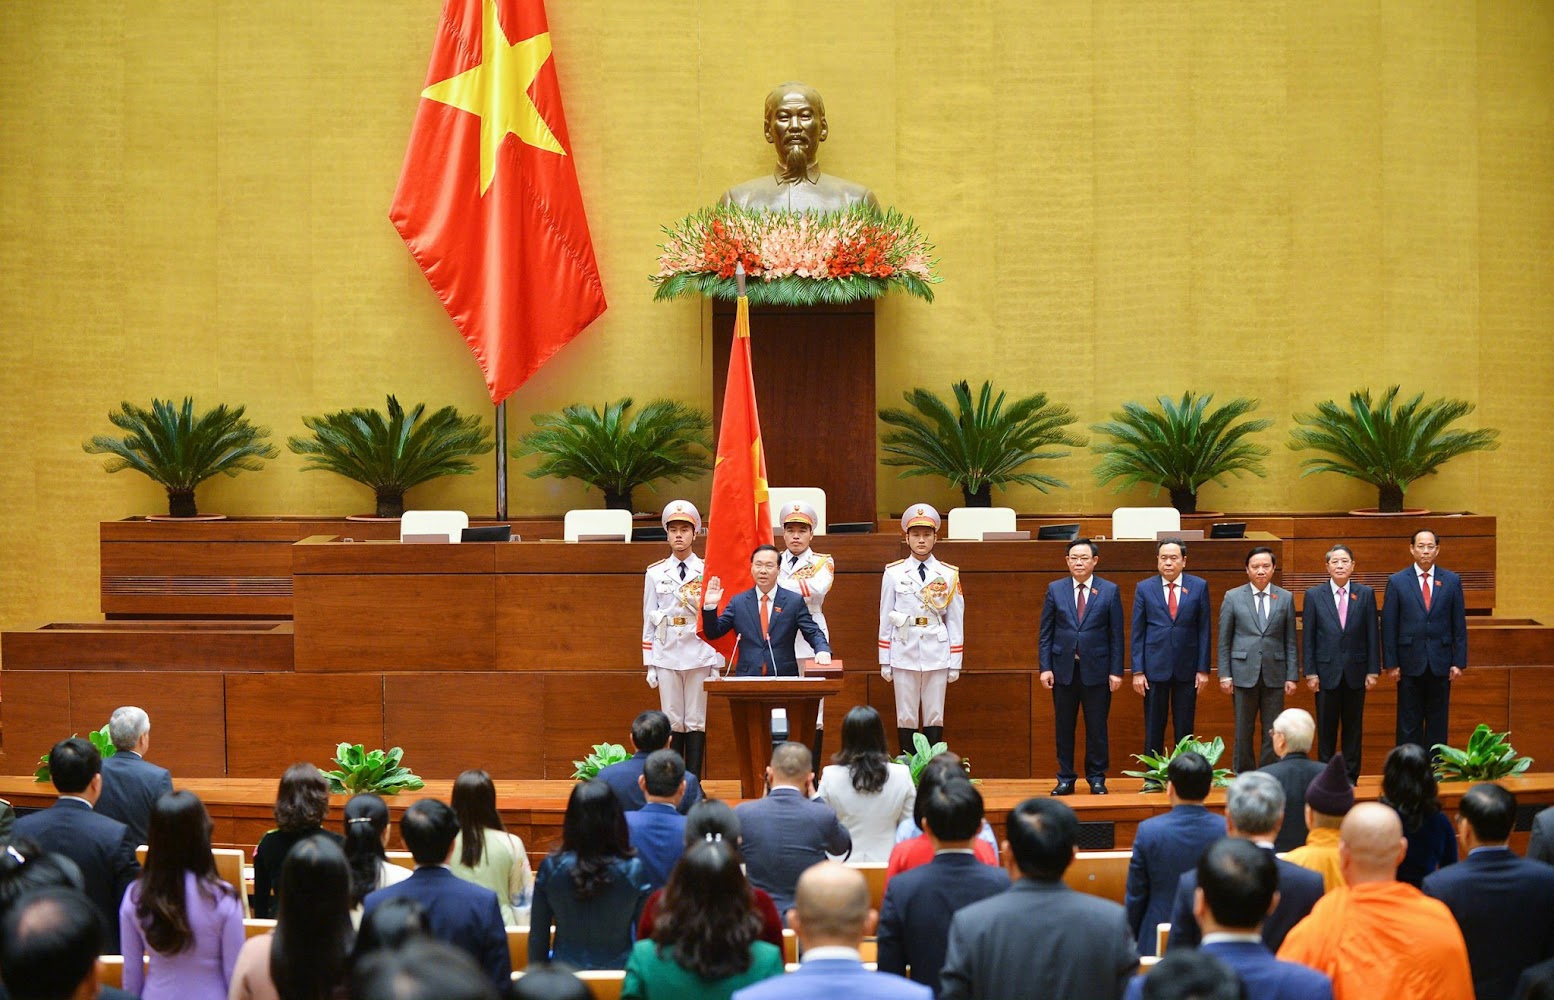 Chùm ảnh: Lễ tuyên thệ nhậm chức của Chủ tịch nước Võ Văn Thưởng - Ảnh 4.